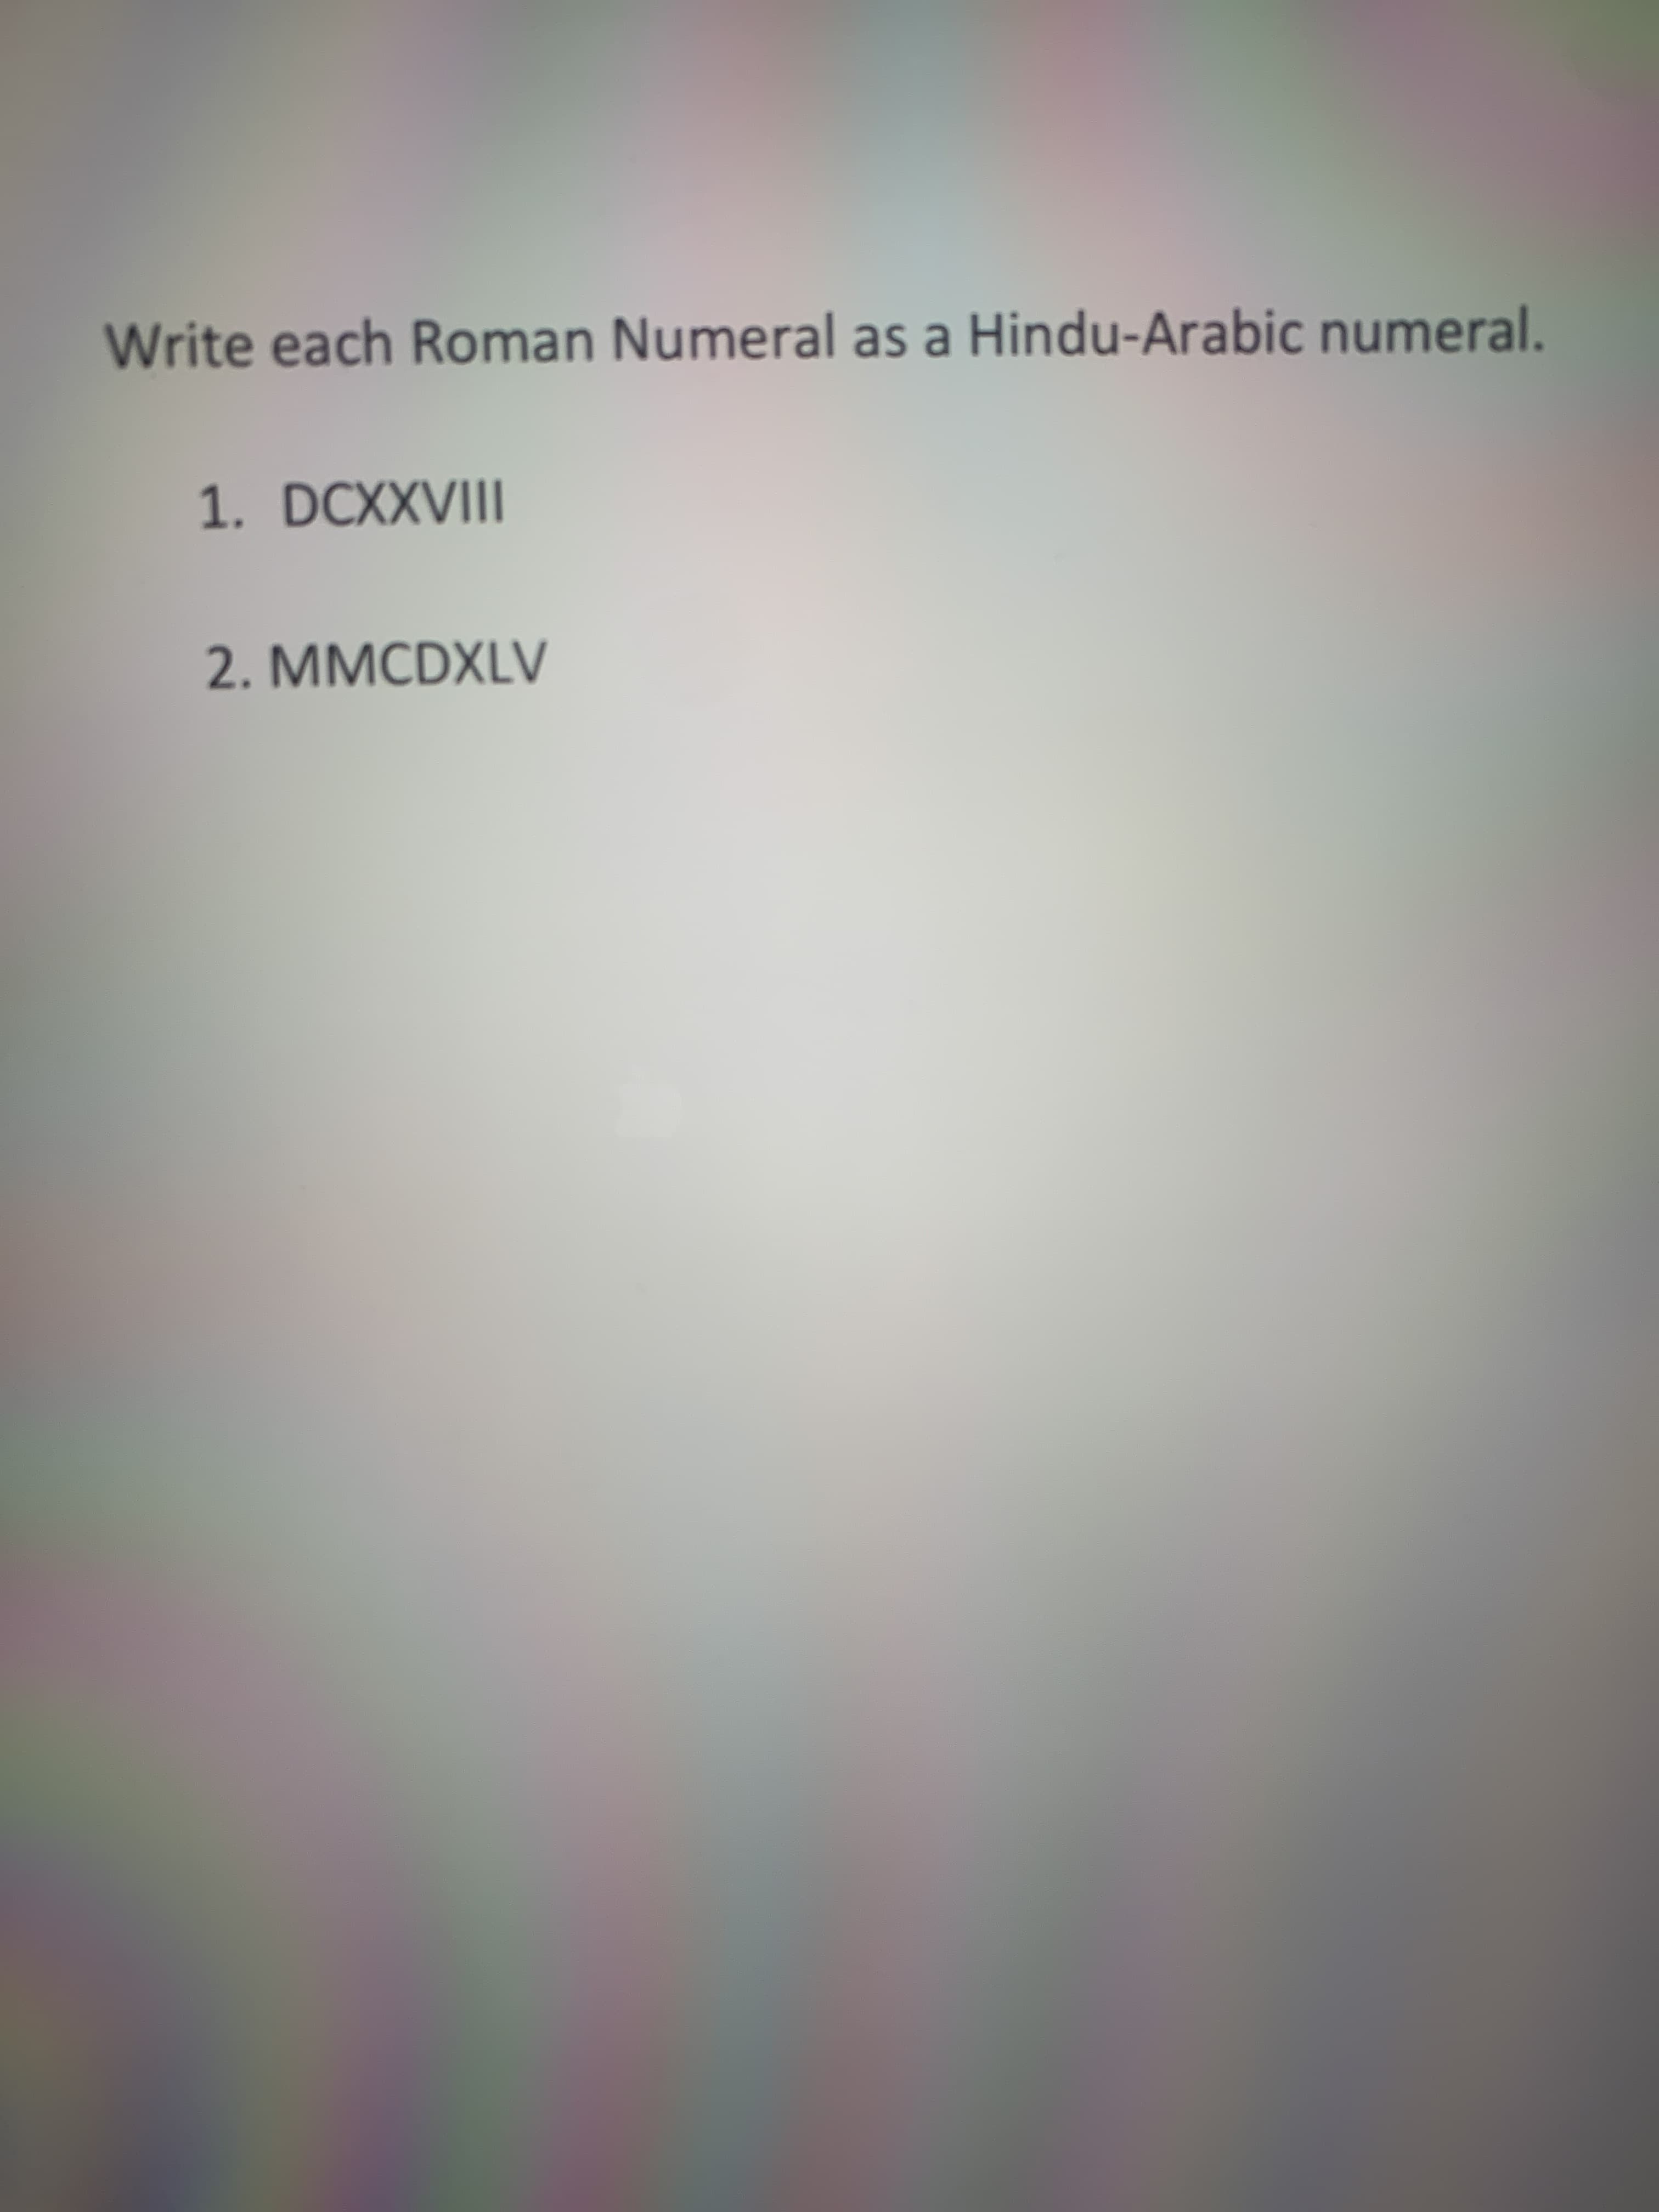 Write each Roman Numeral as a Hindu-Arabic numeral.
1. DCXXVIII
2. MMCDXLV
